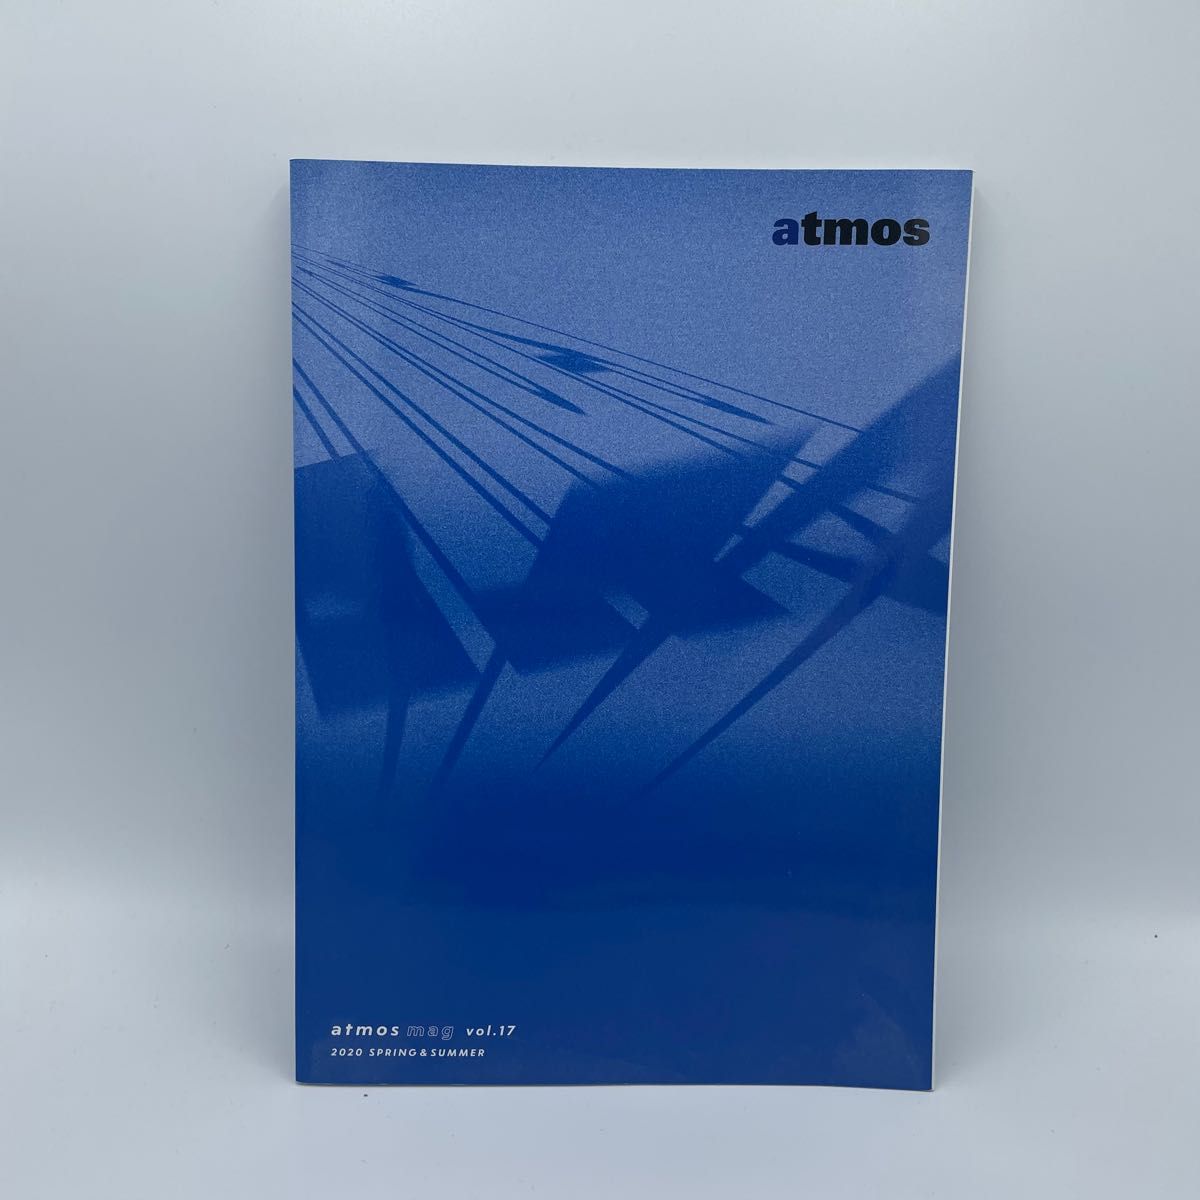 atmos mag vol.17 2020 spring&summer アトモス スニーカー カタログ